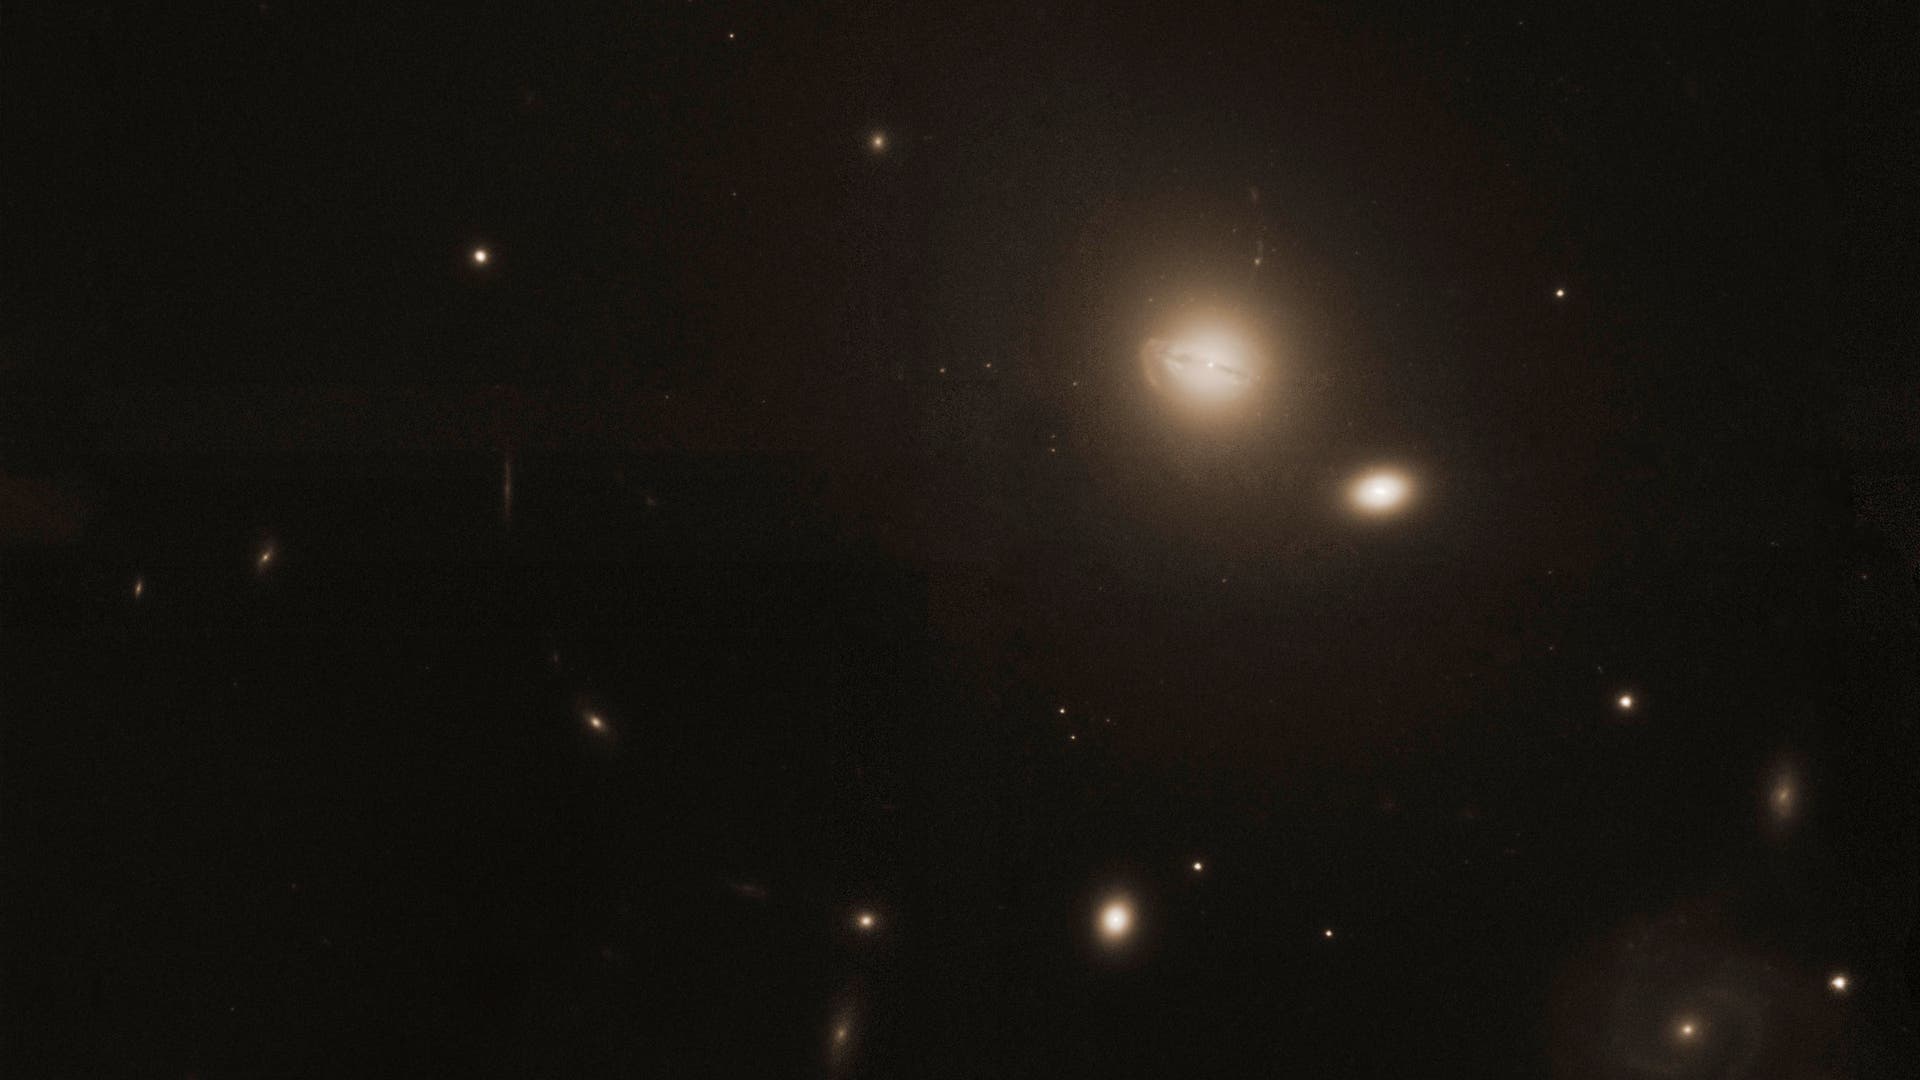 Galaxienhaufen Abell 780 im Sternbild Wasserschlange